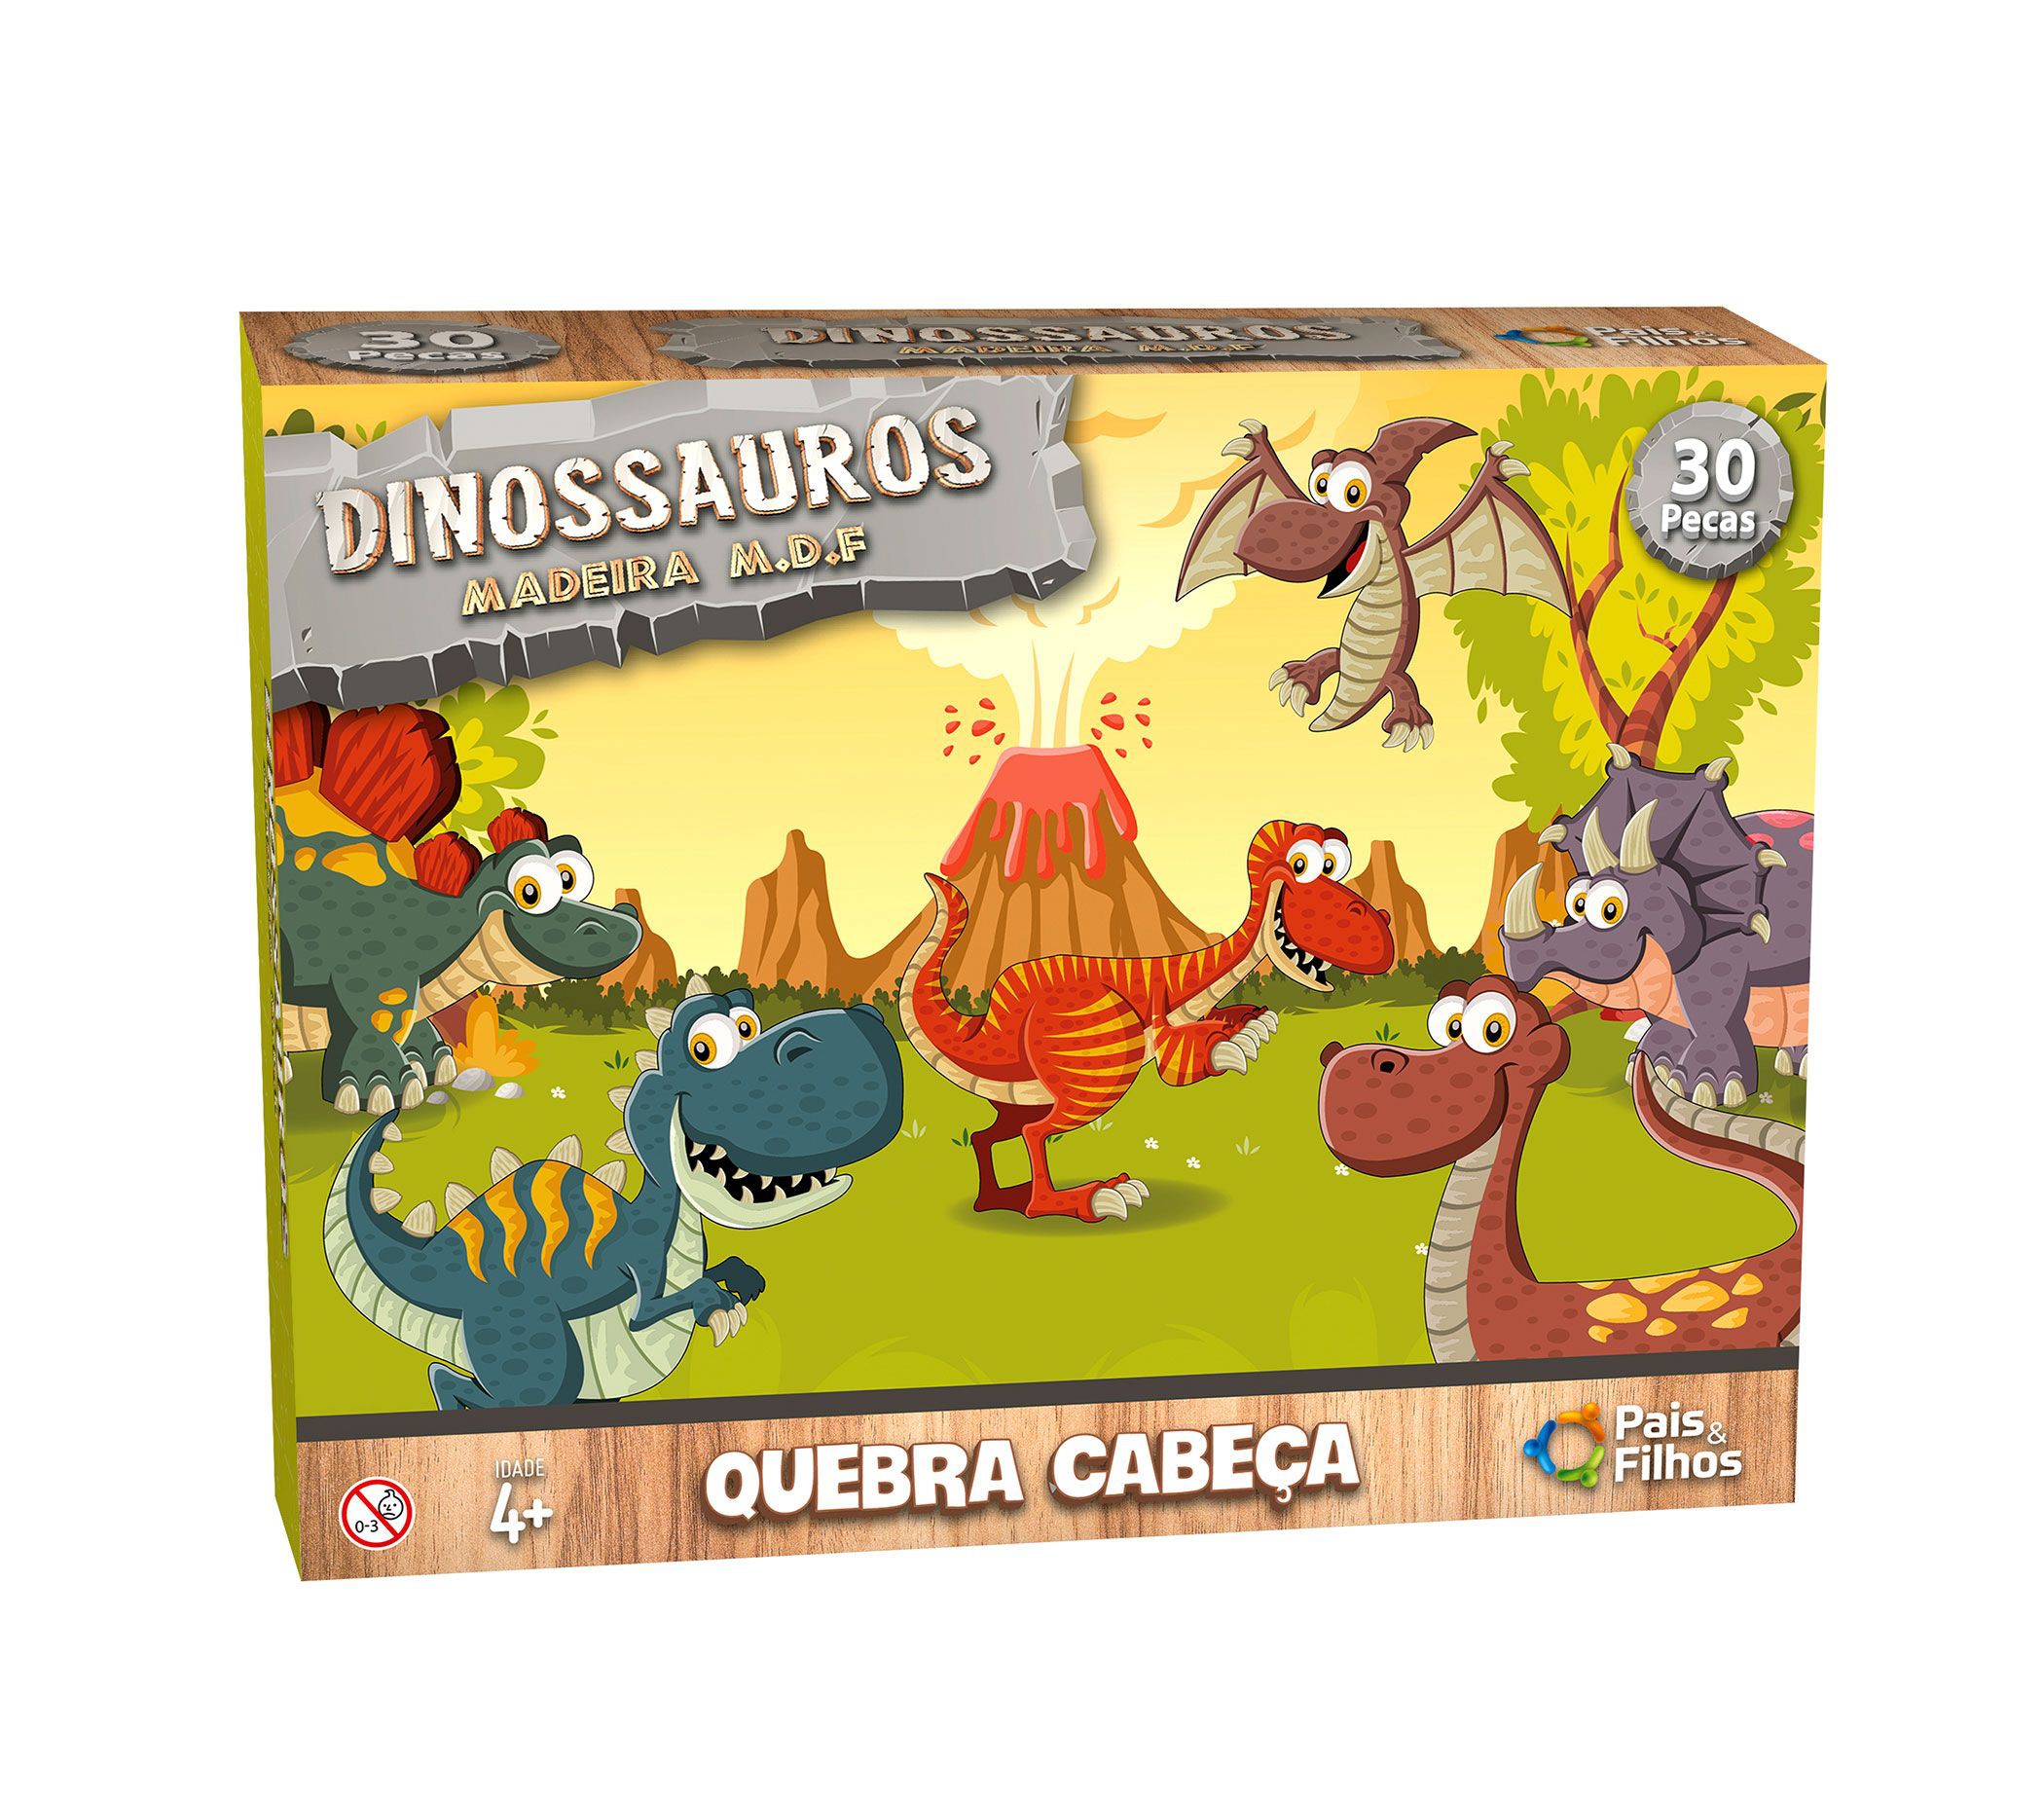 Jogo da Memória Educativo Dinossauro Madeira 24 Peças Infantil